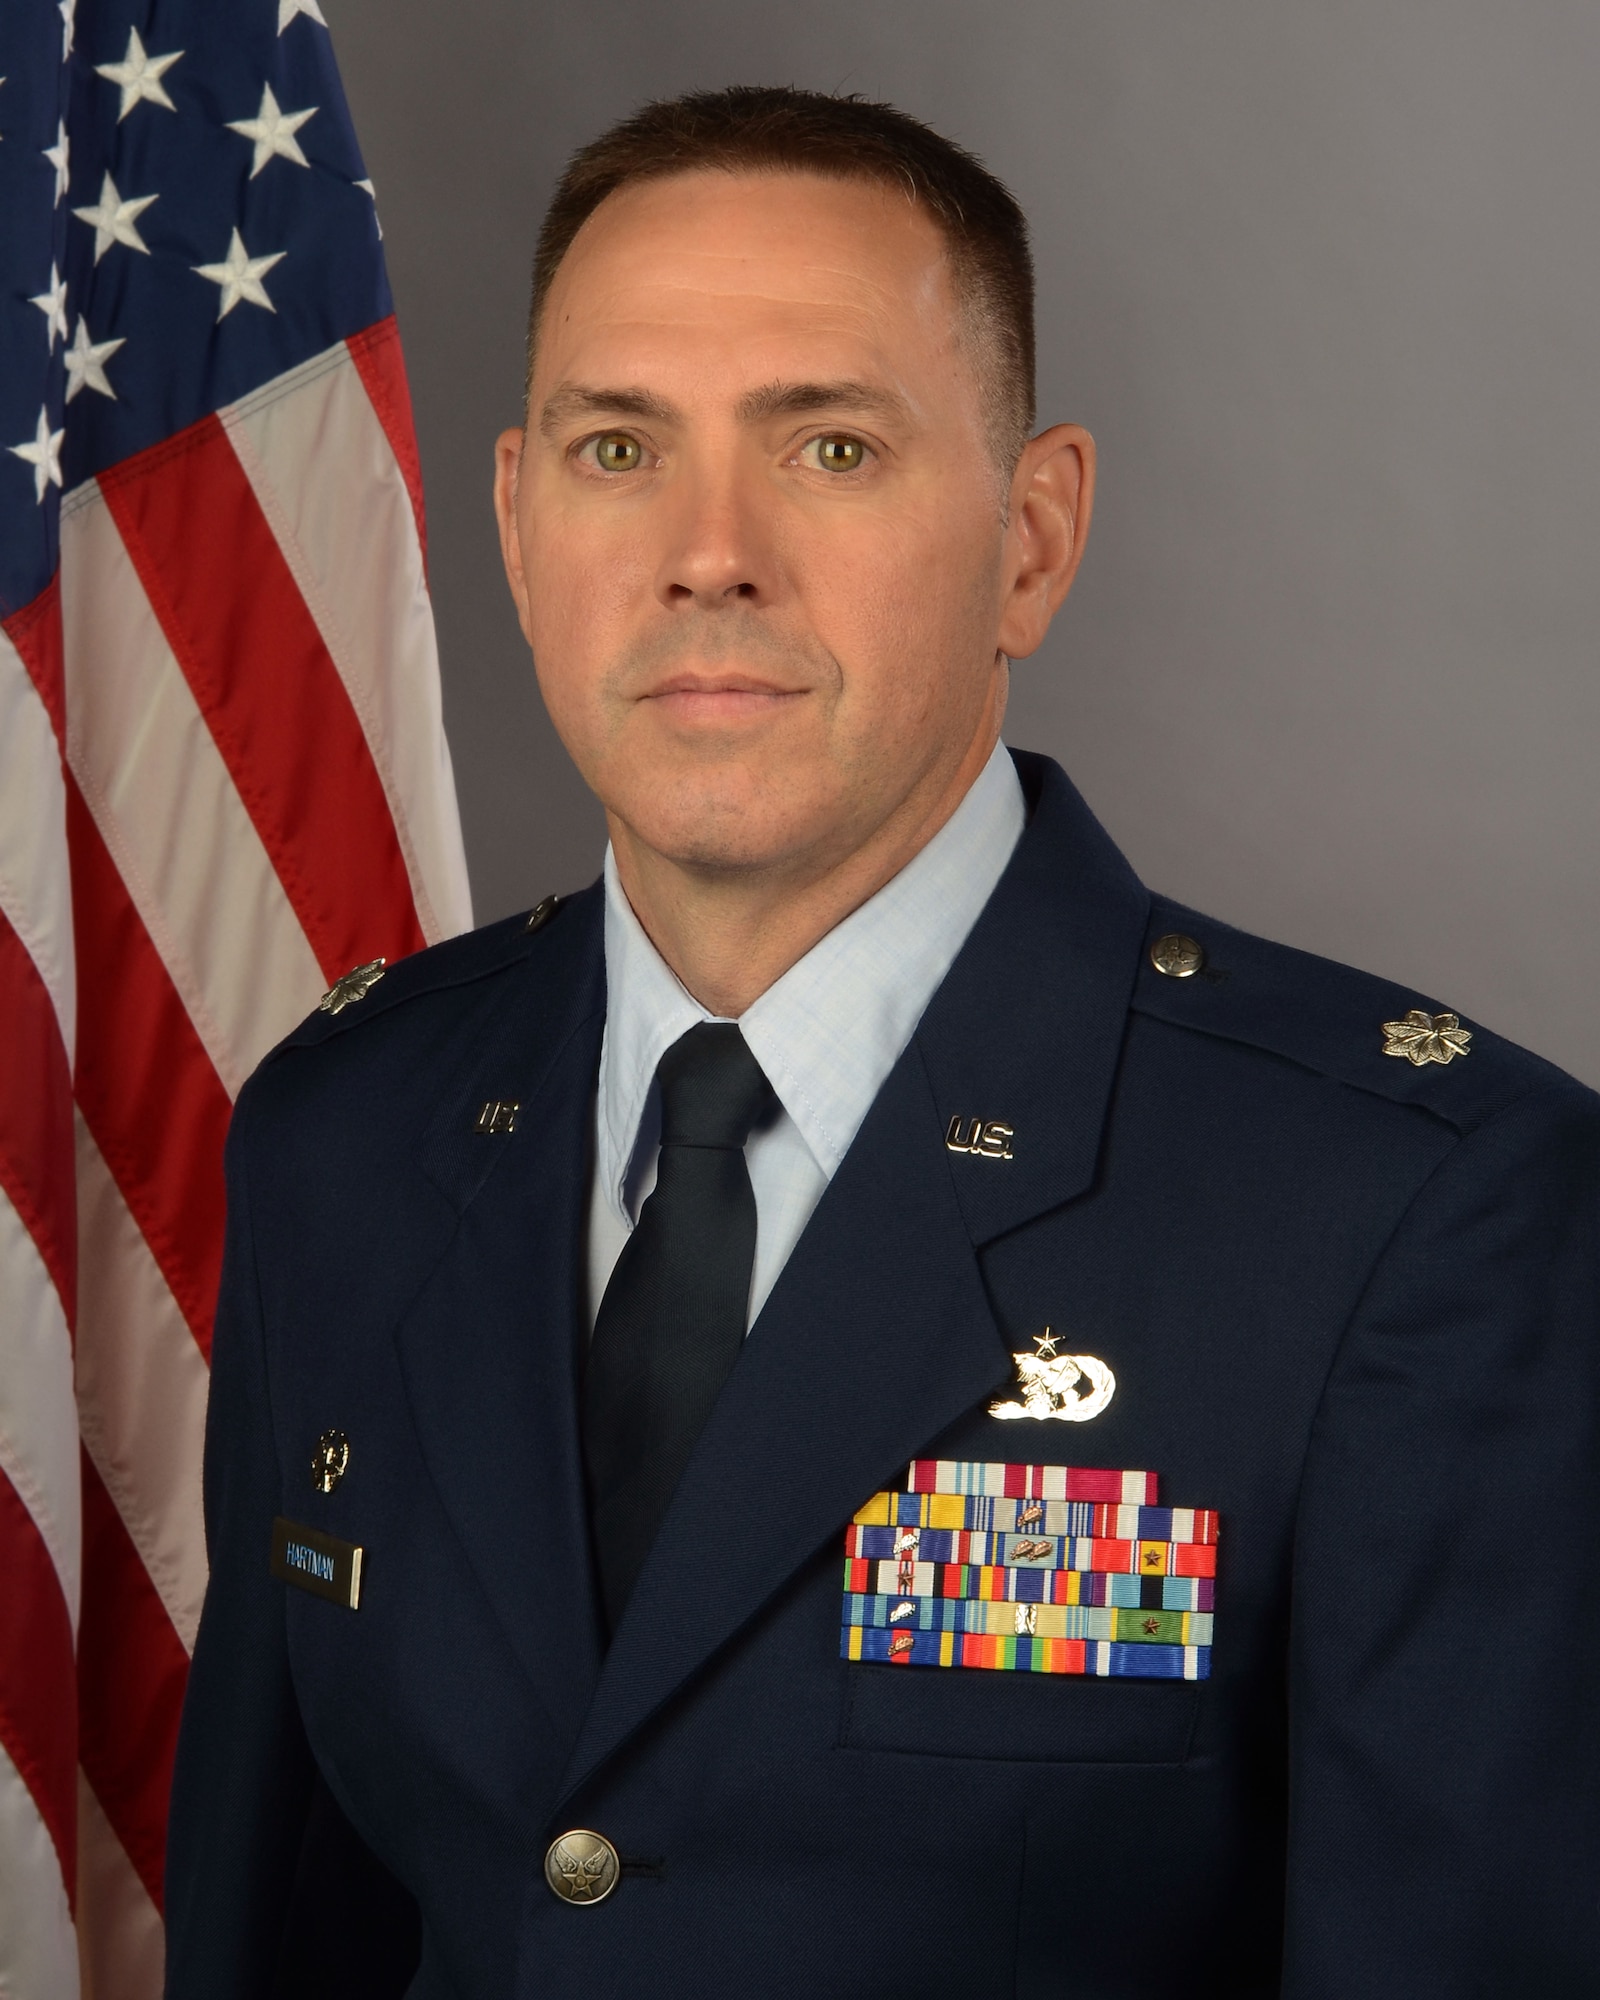 Lt. Col. Kenneth Hartman